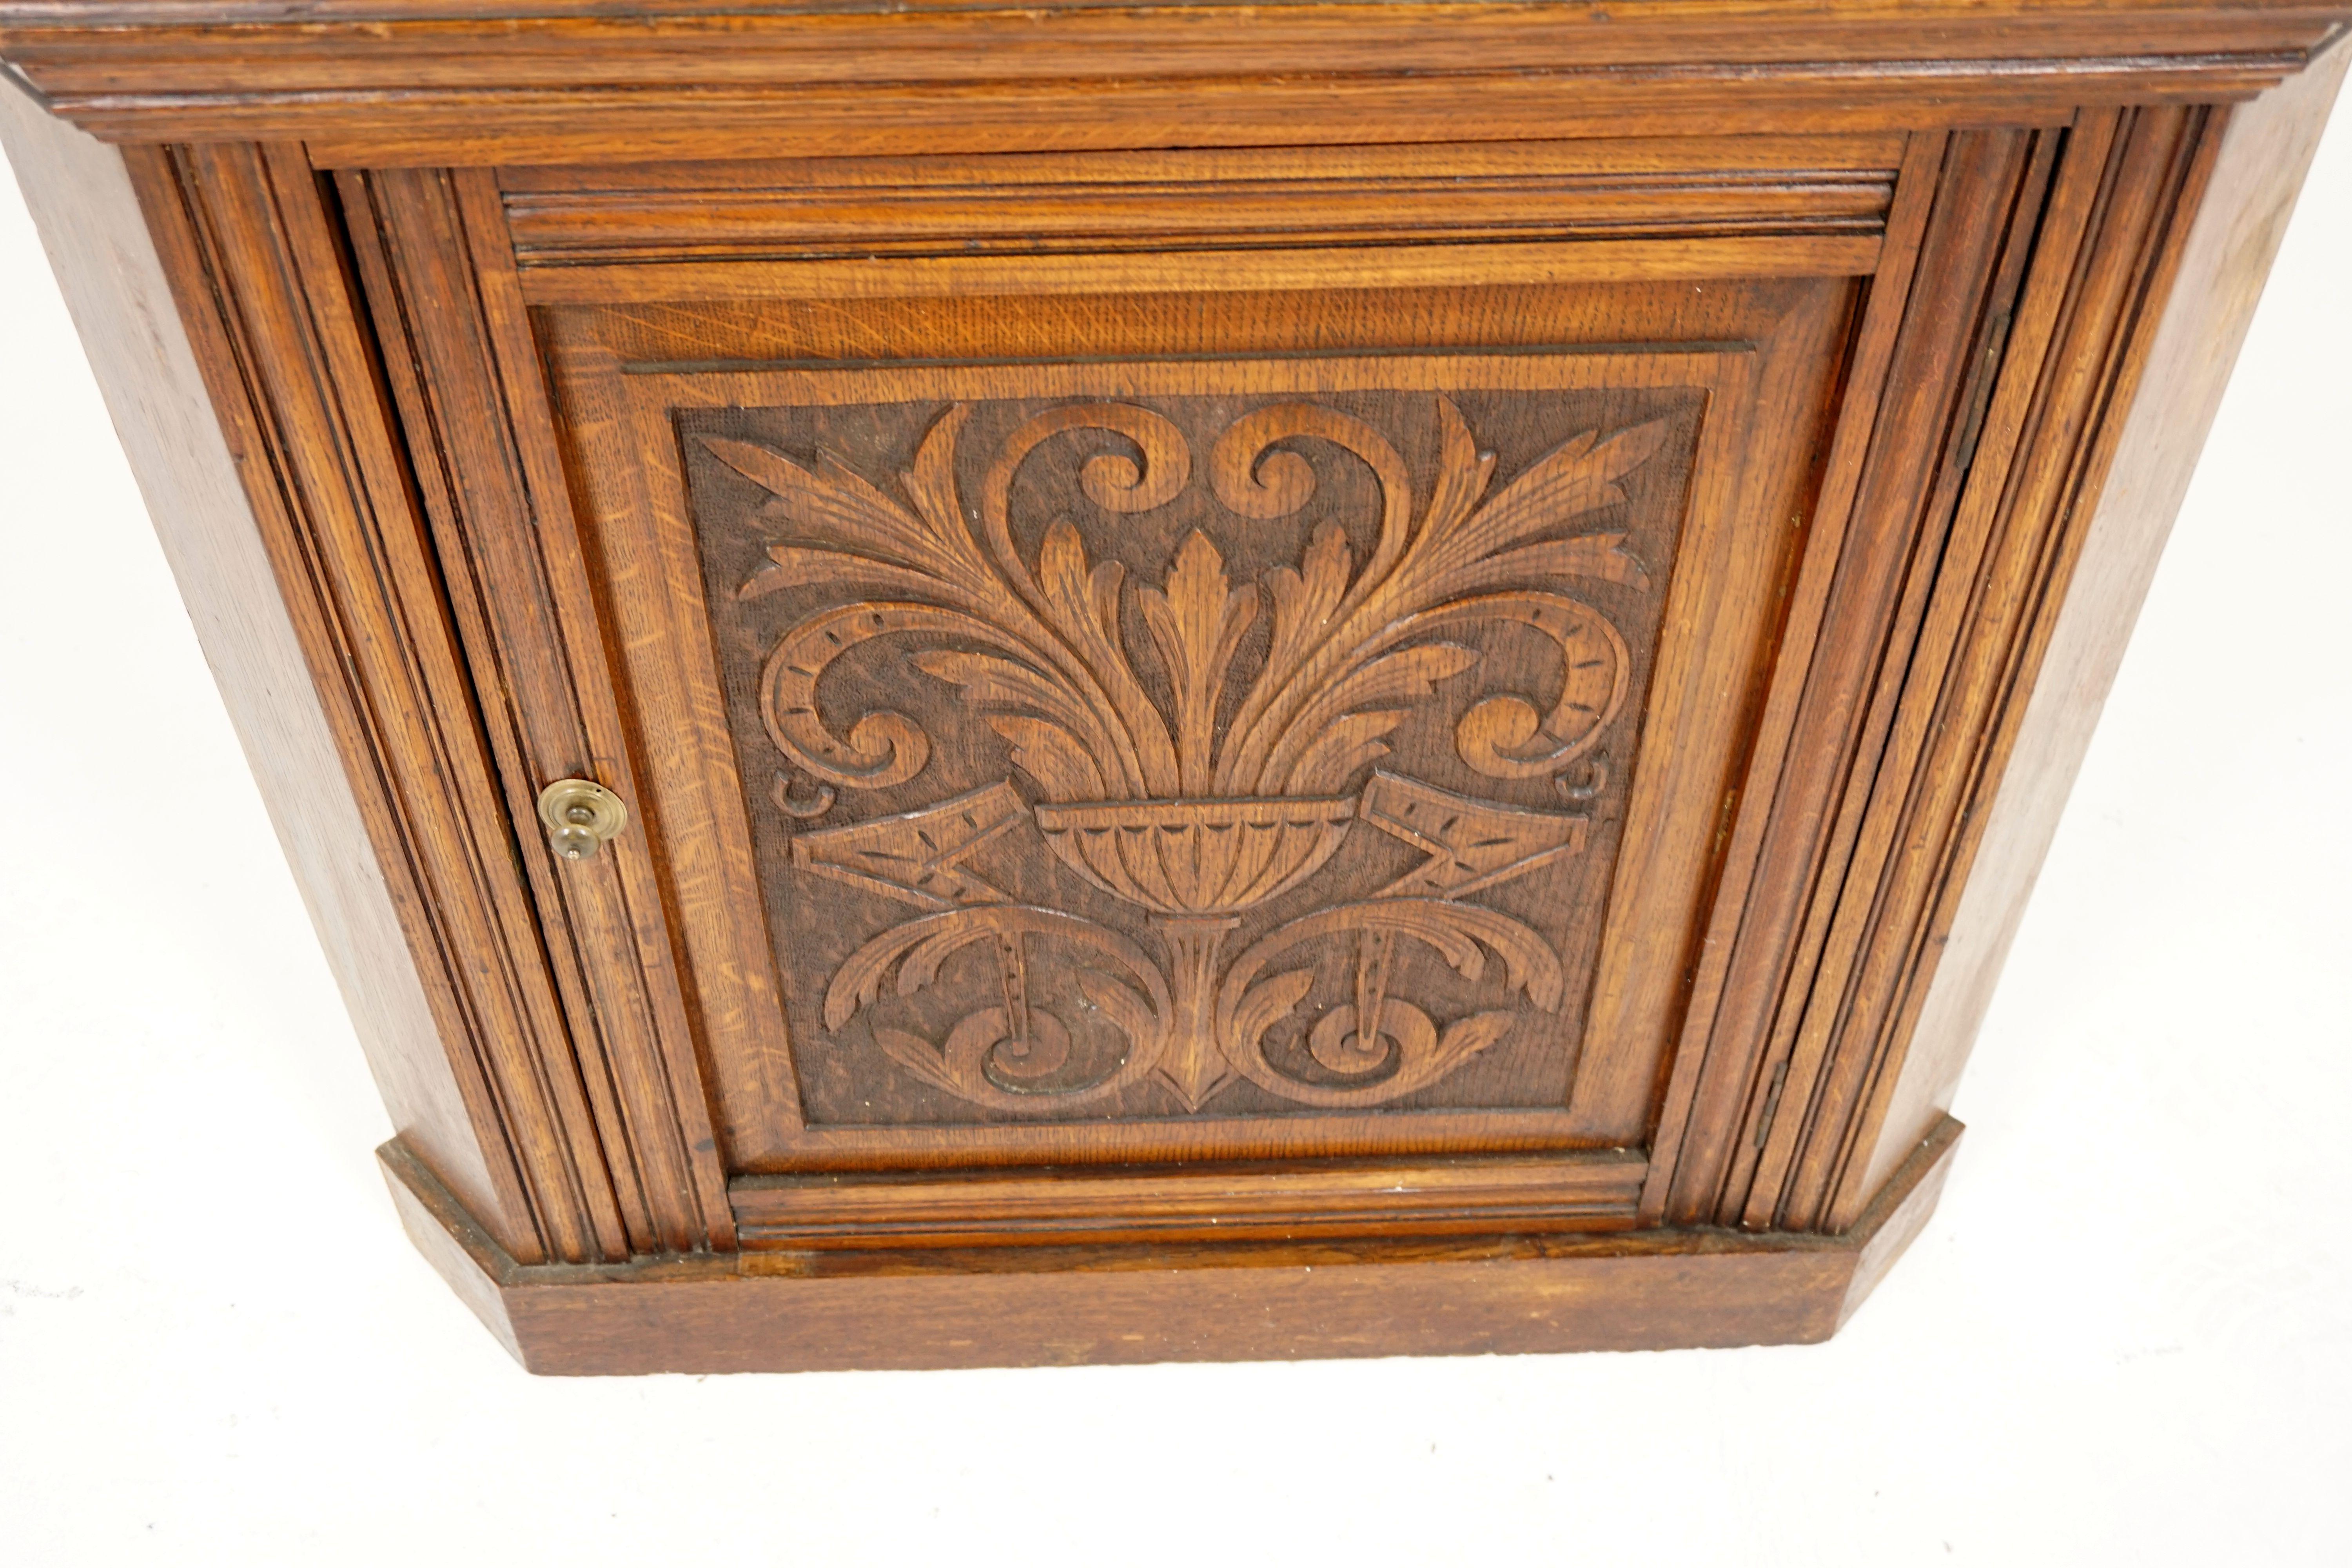 Scottish Antique Corner Cabinet, Carved Oak, Free Standing Cabinet, Scotland, 1900